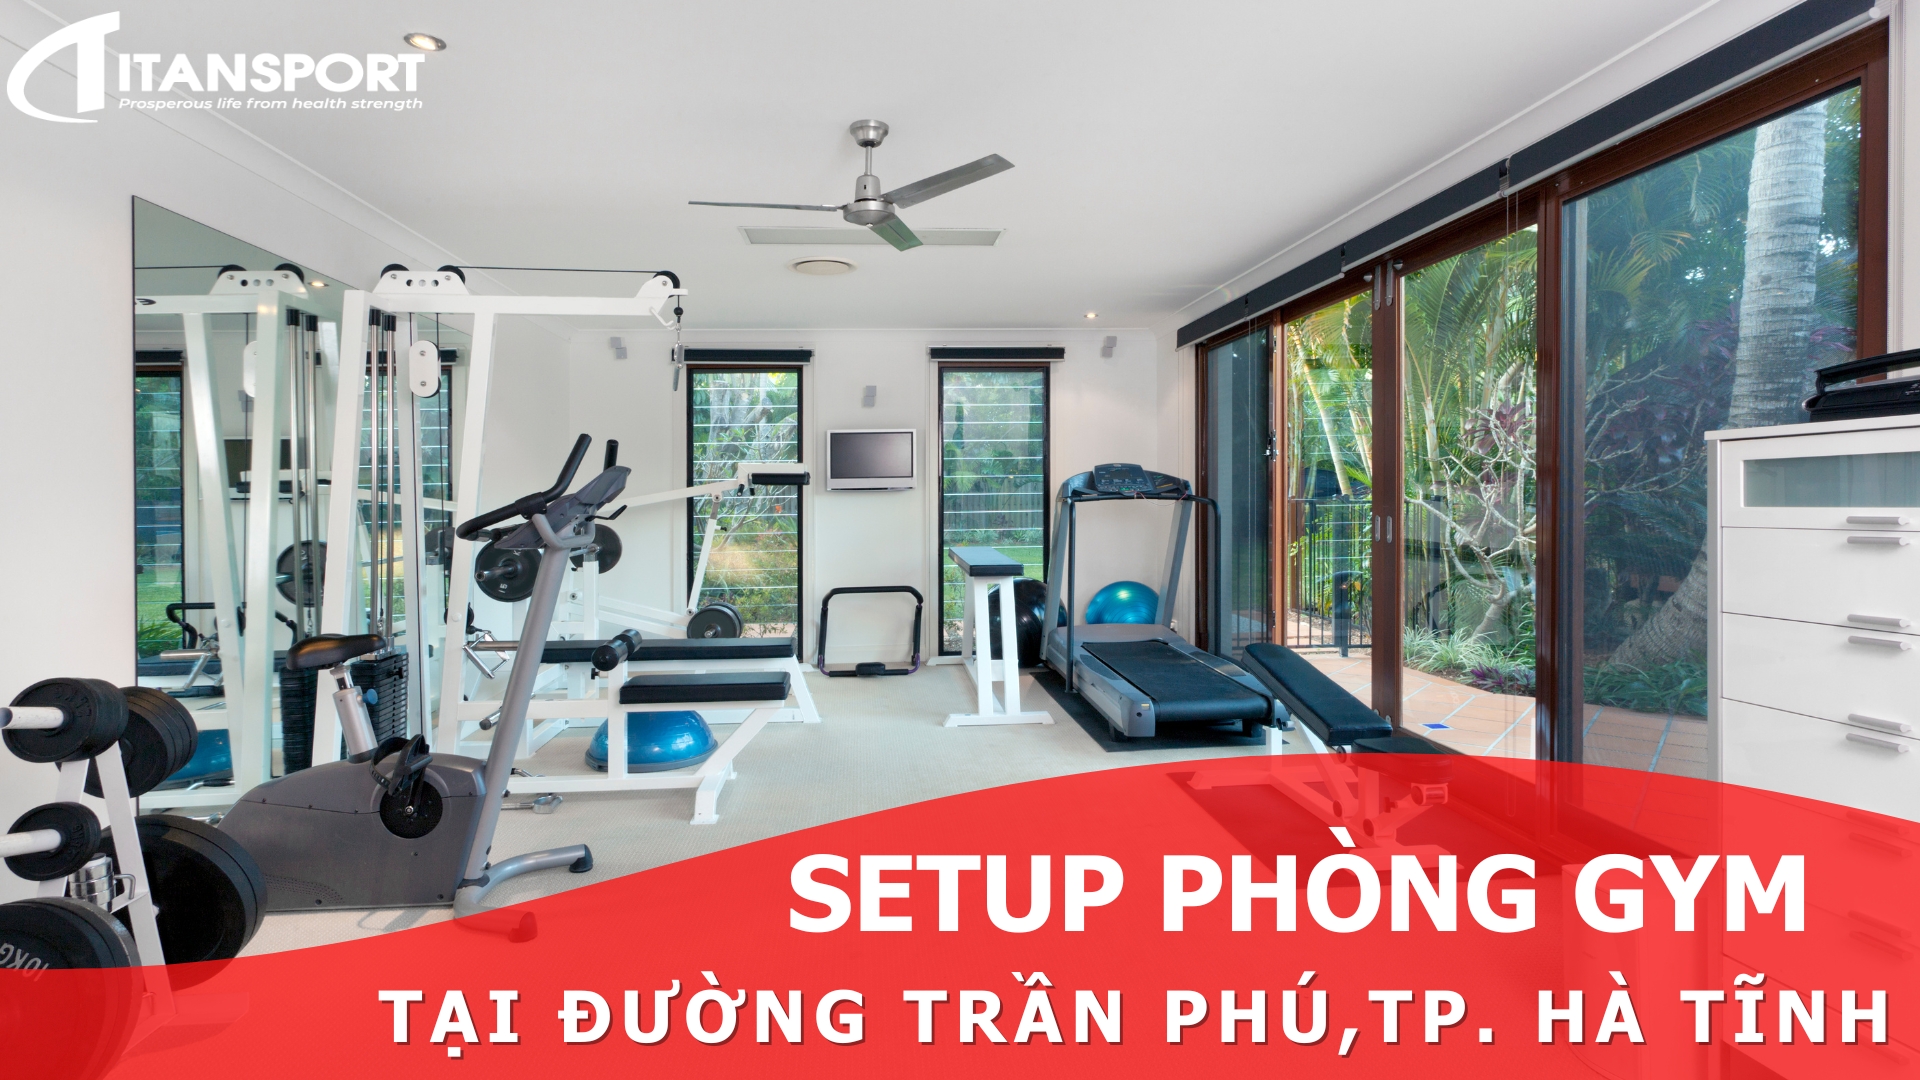 Dự án setup gym Hà Tĩnh tại Titan Sport